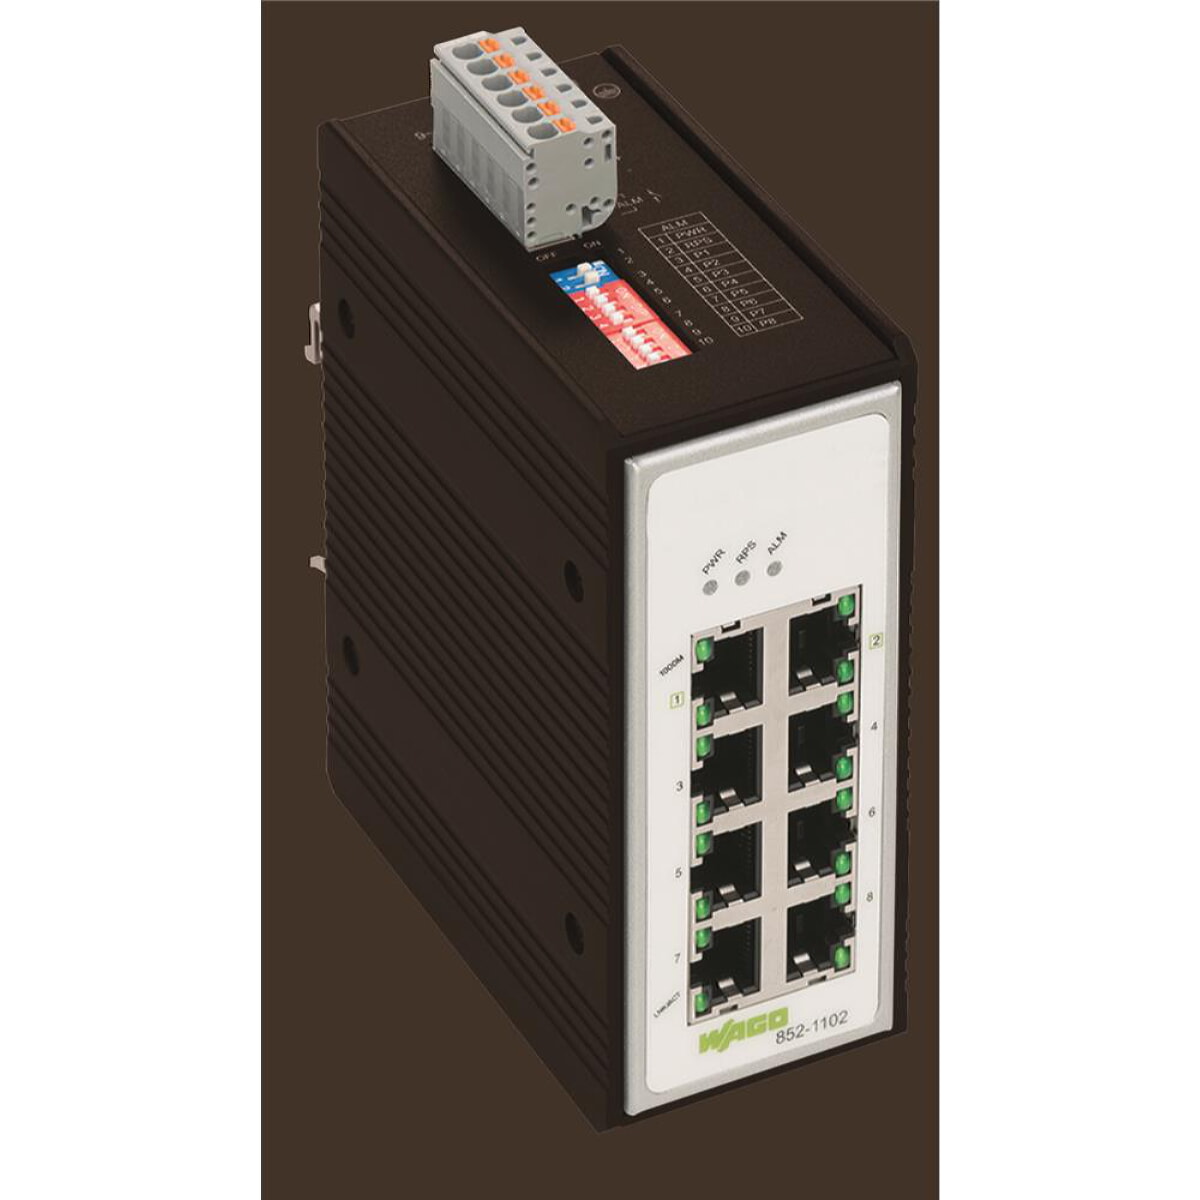 WAGO Industrial-Switch 8 Ports 1000Base-T schwarz 852-1102